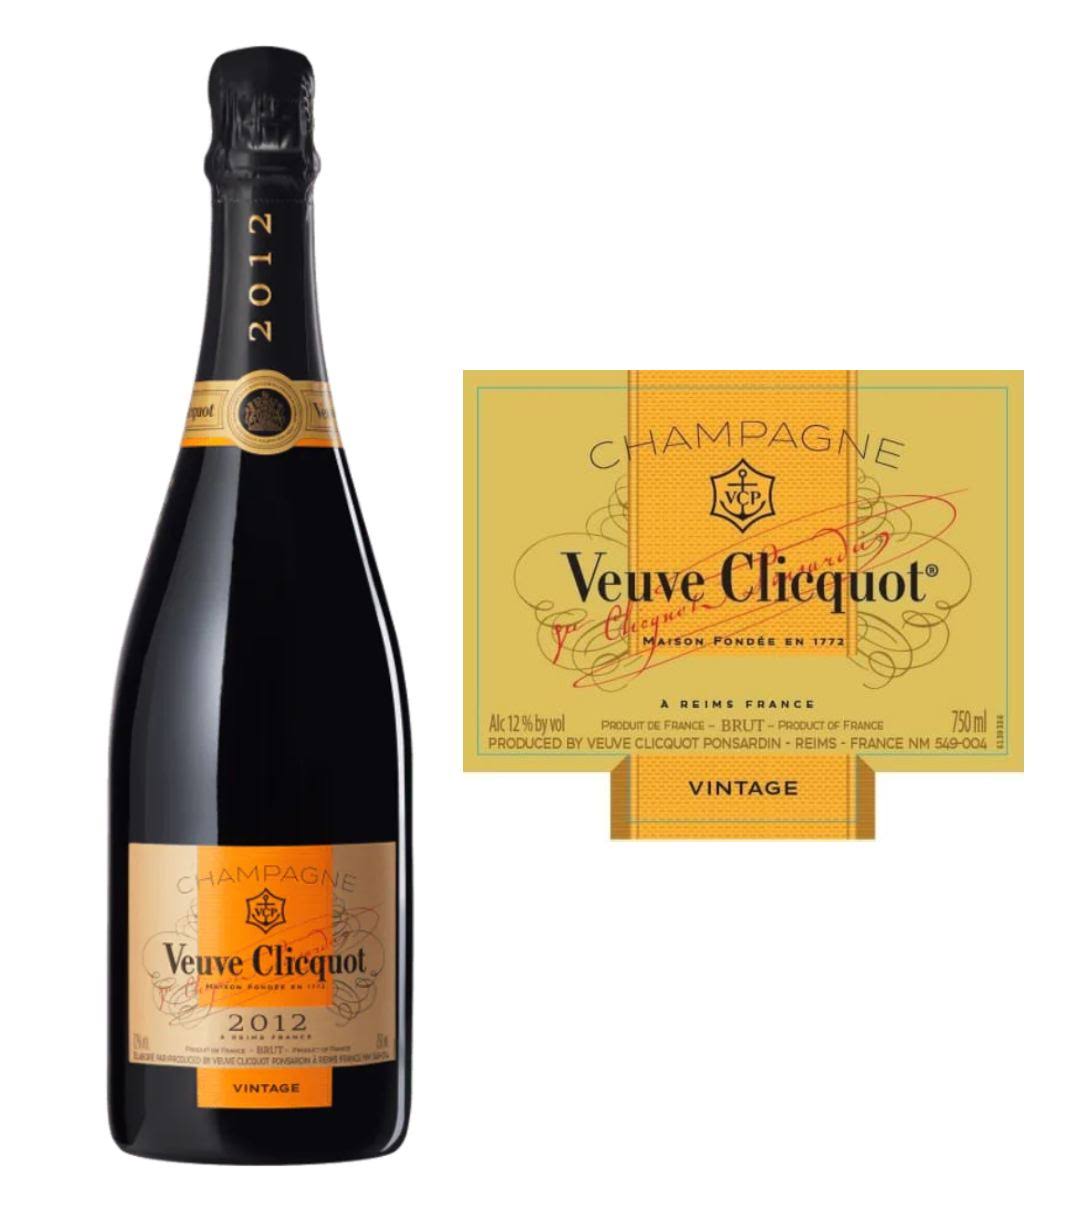 Veuve Clicquot Vintage Brut Gold Label 2012 (750 ml)